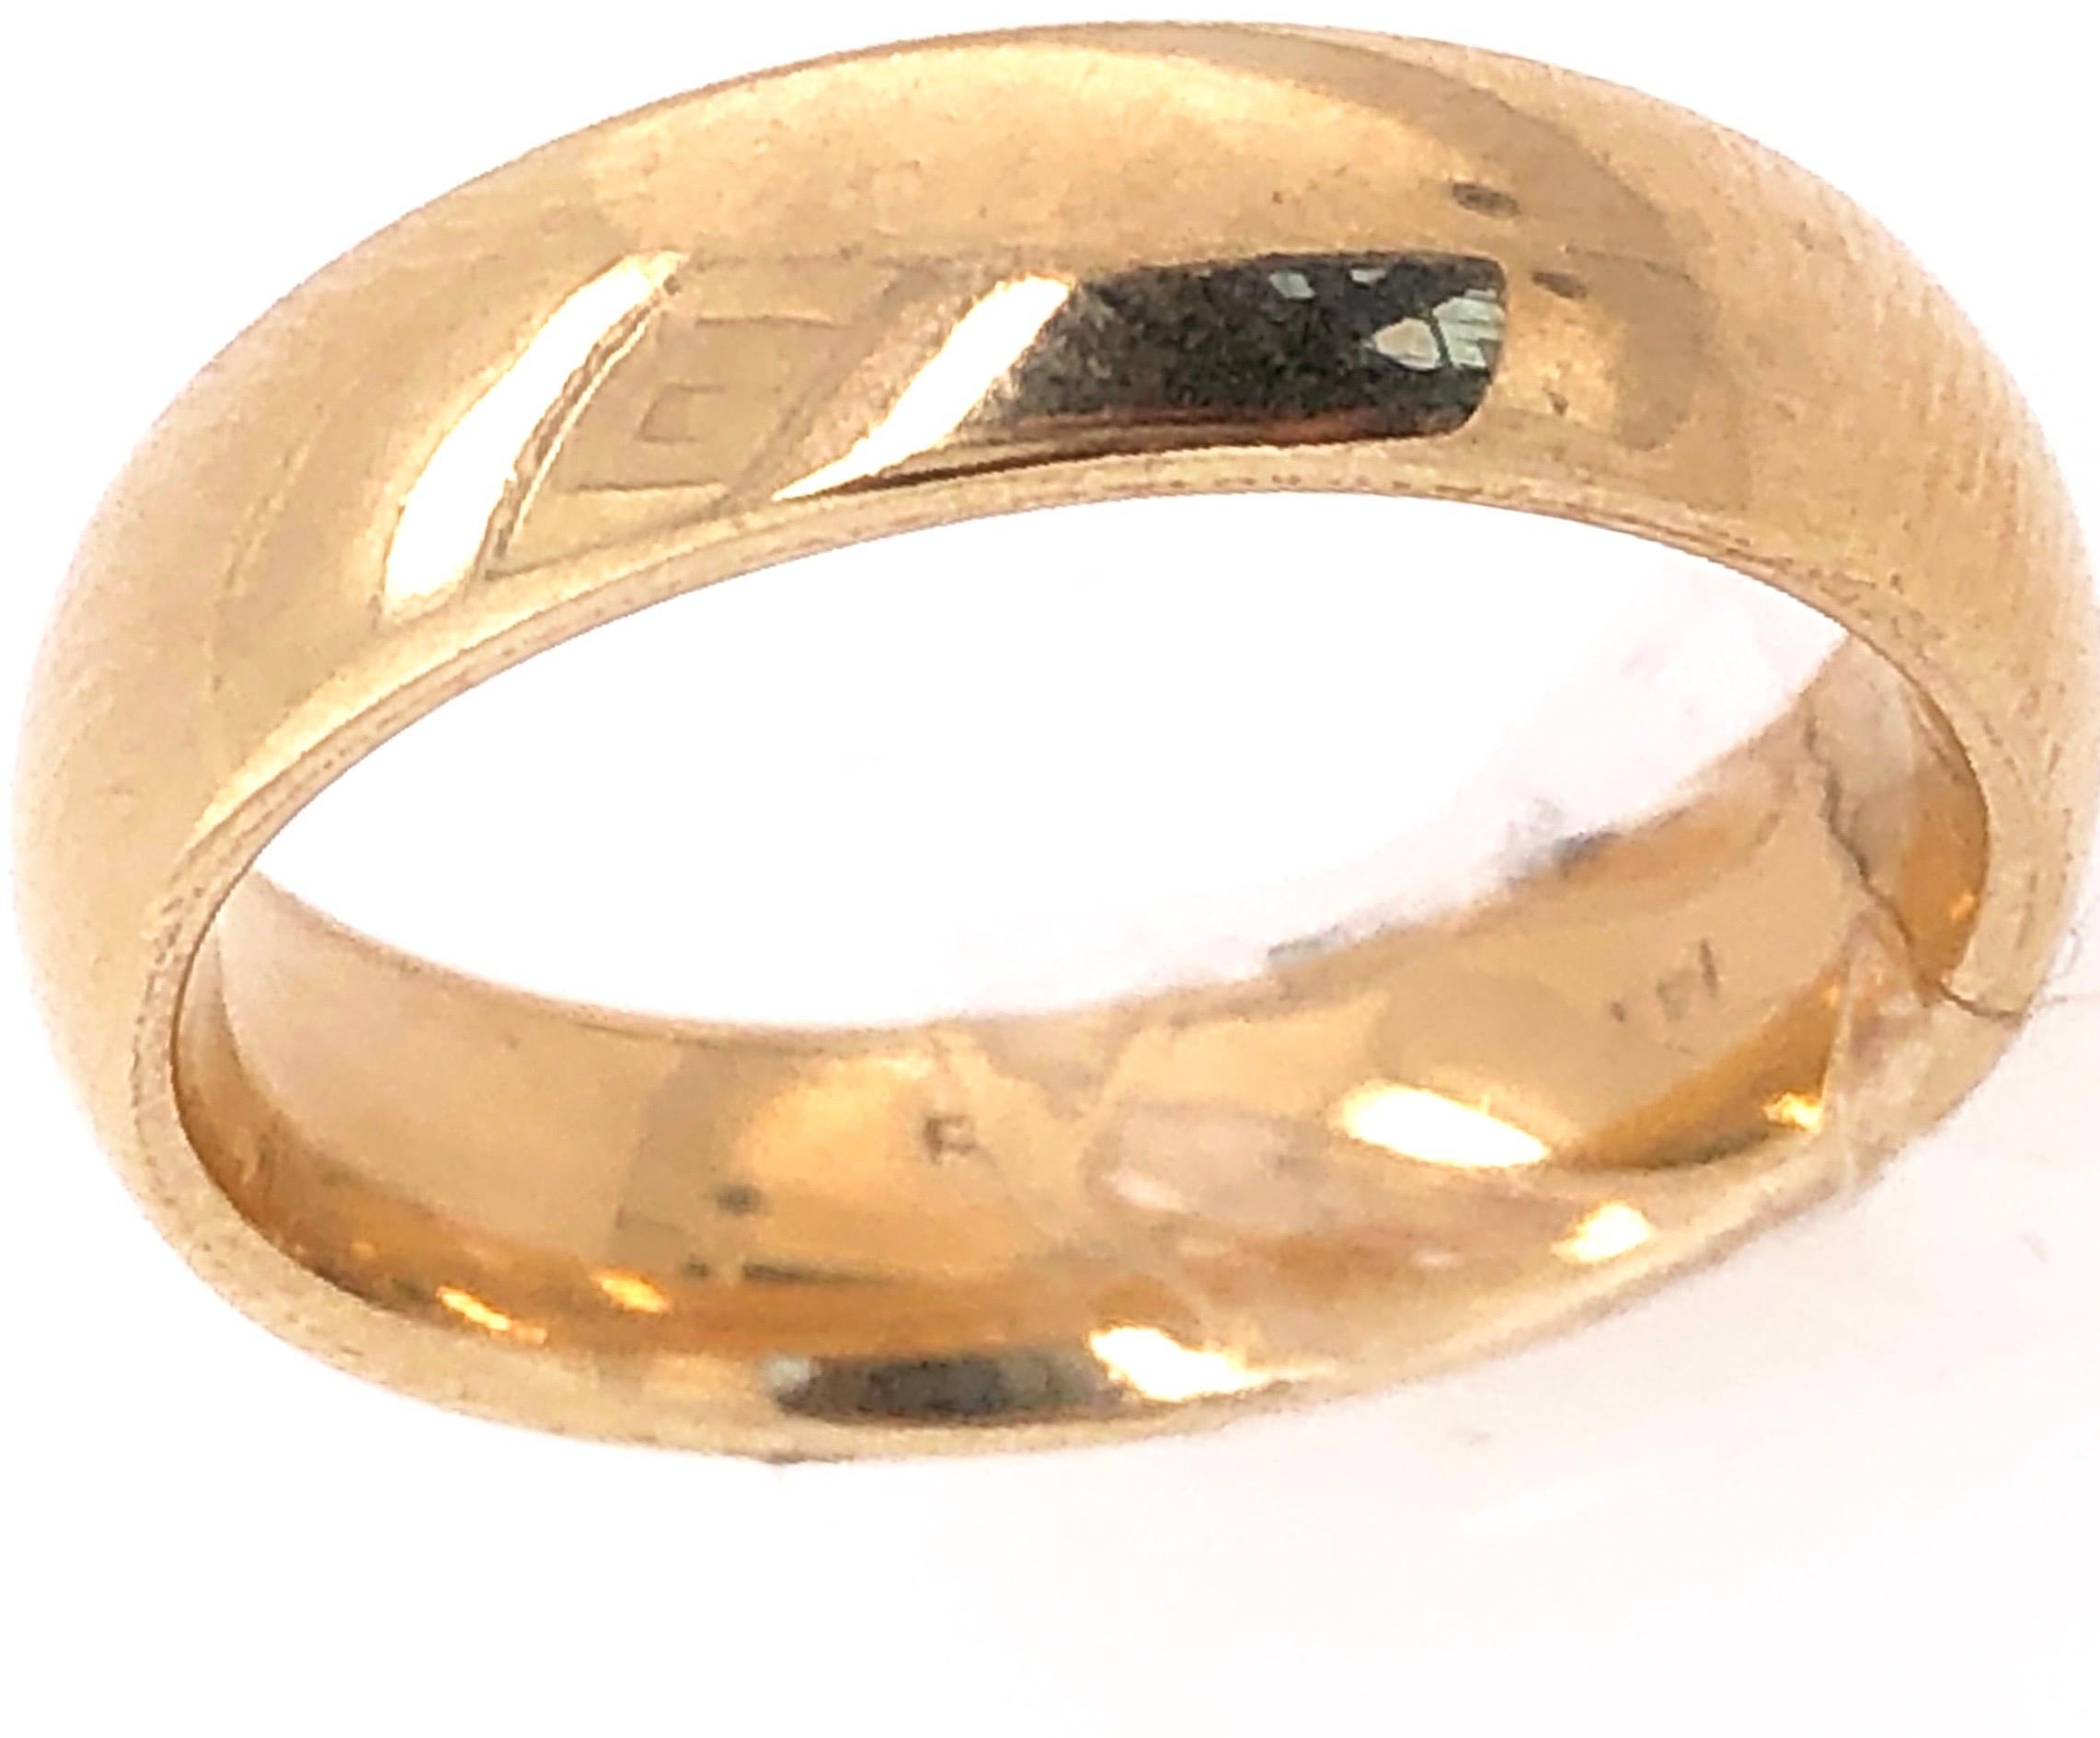 14 Karat Yellow Gold Wedding/Band Ring.
Size 6 
5.3 grams Total weight.